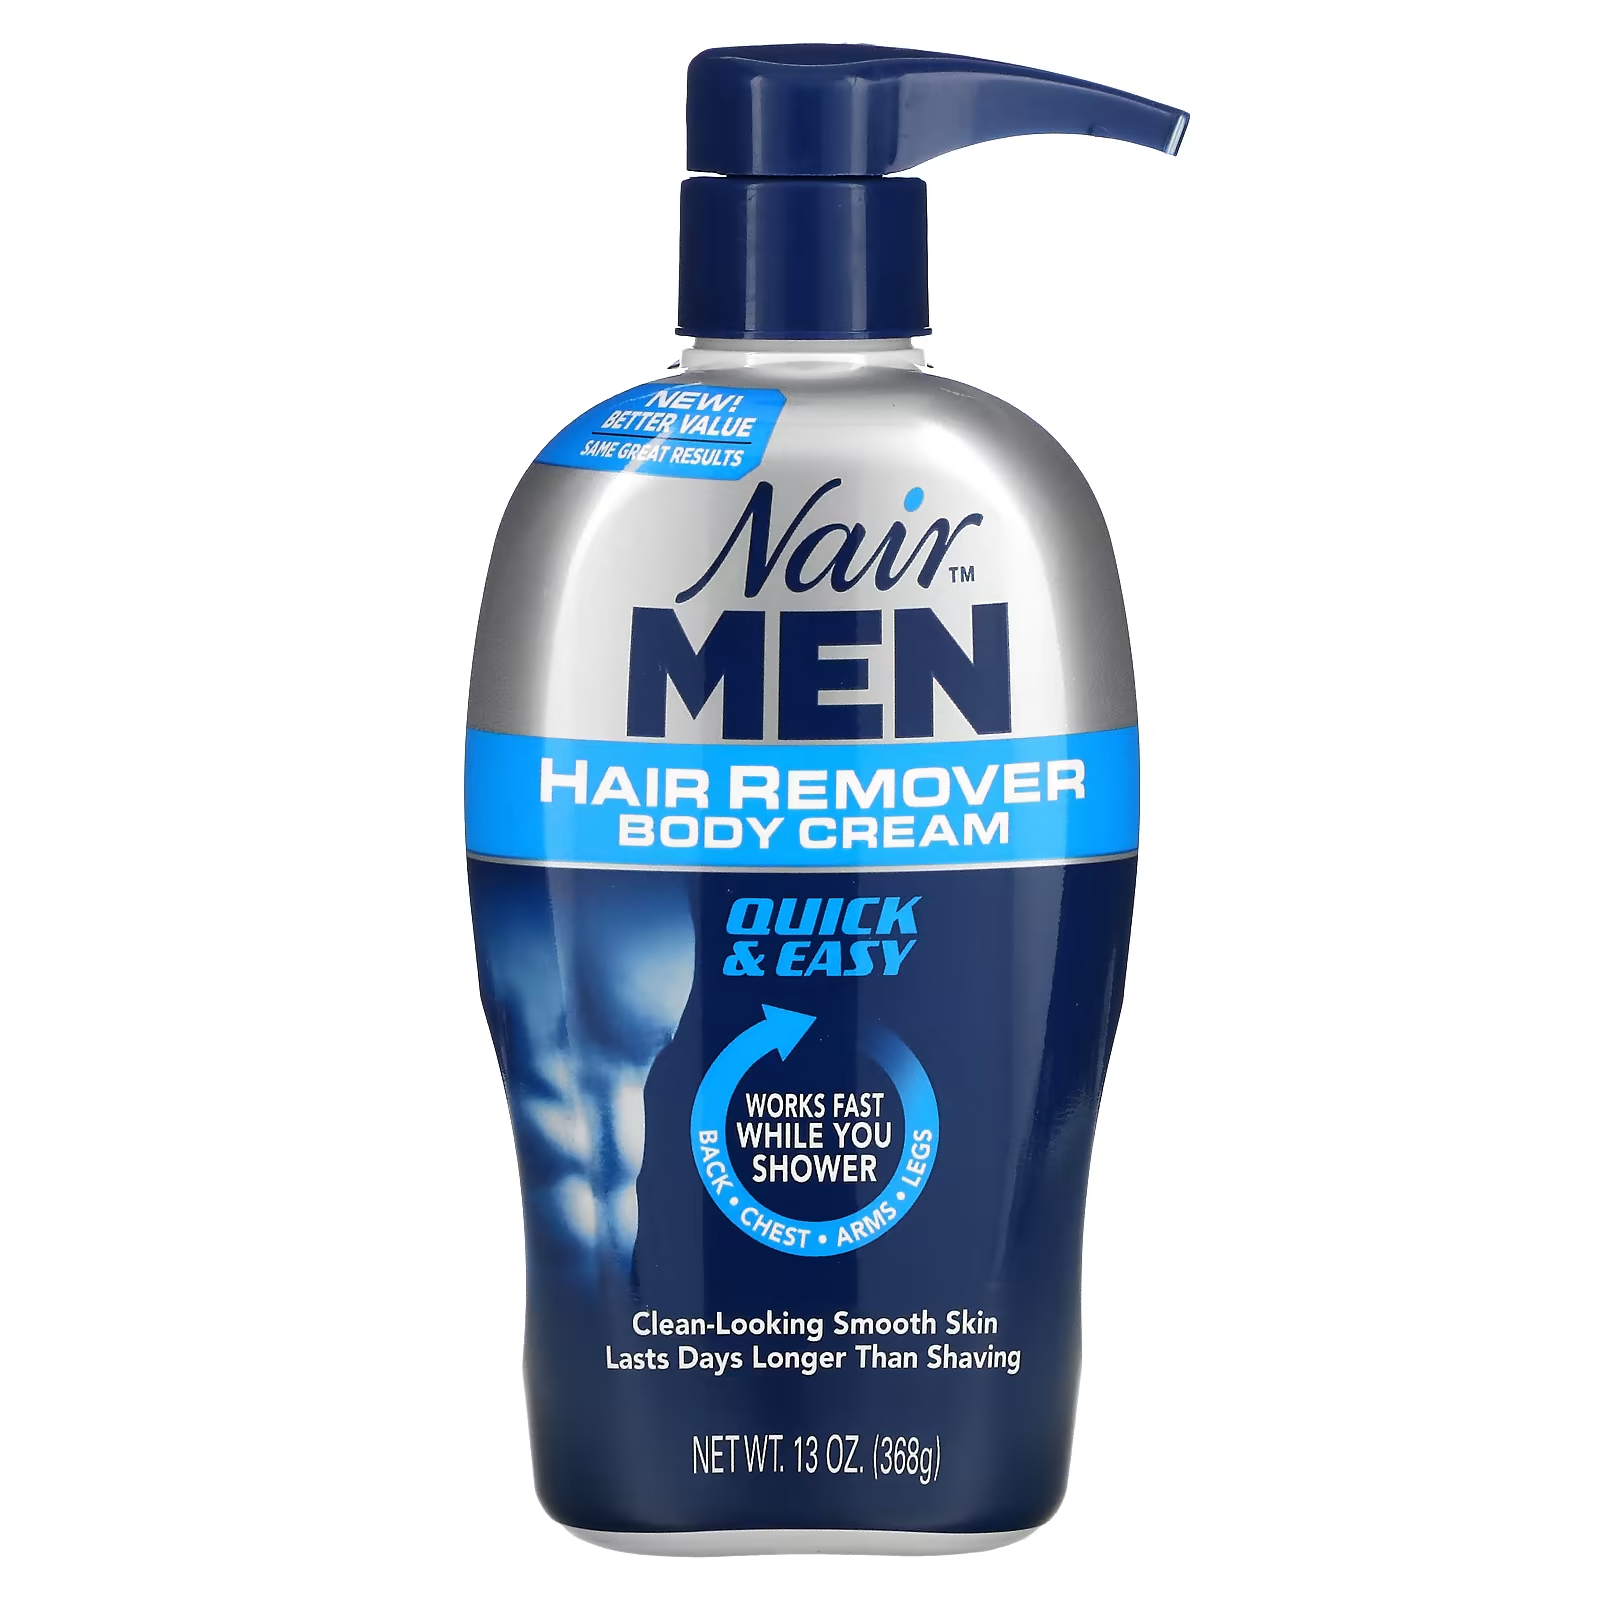 Крем Nair For Men для удаления волос, 368 г nair средство для удаления волос крем для душа натуральное кокосовое масло и витамин e 357 г 12 6 унции